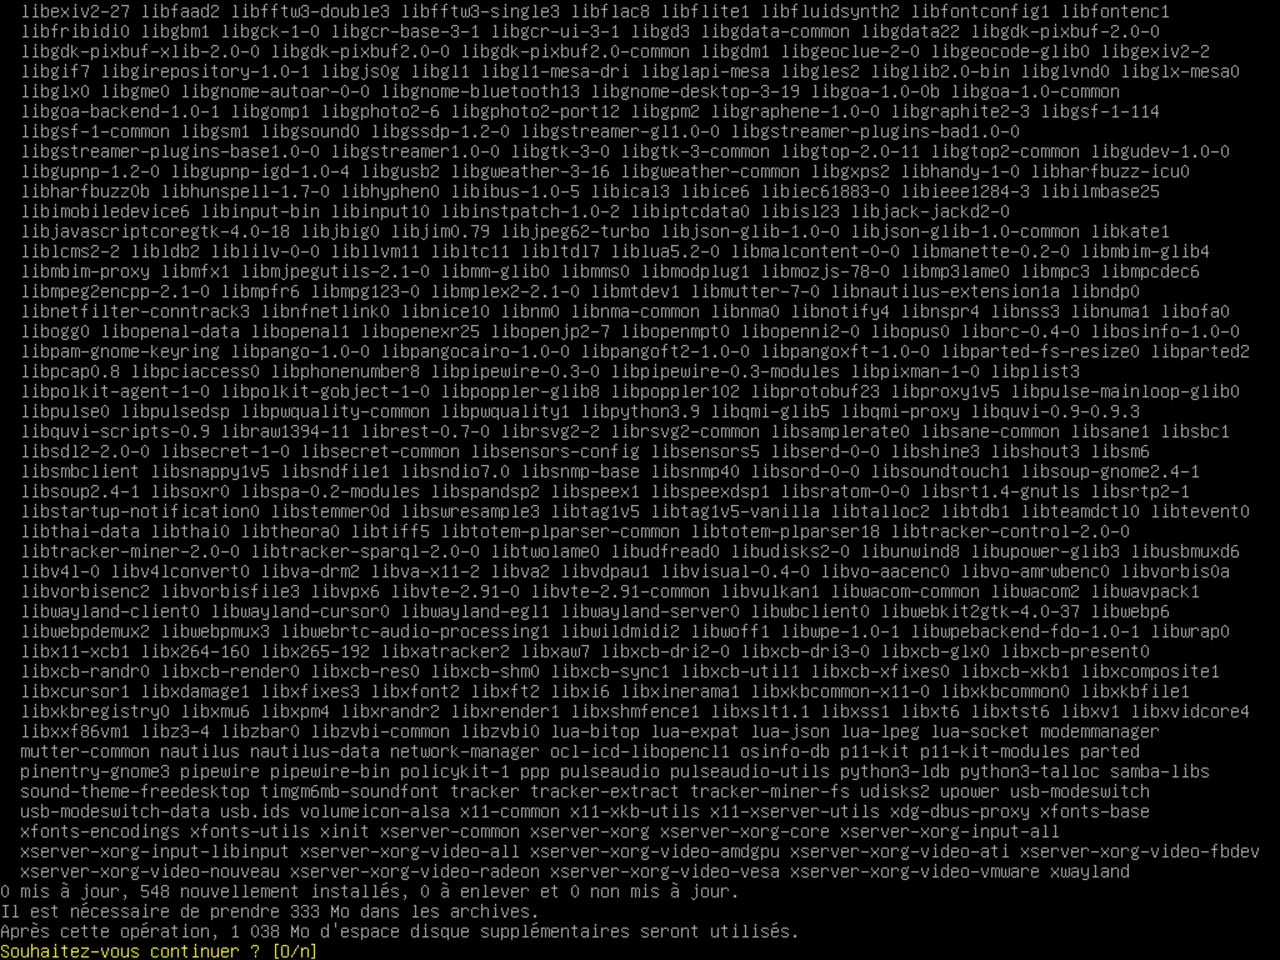 Mon premier ordinateur Linux - Confirmez la liste des packages sélectionnés pour installer un environnement graphique Gnome minimal sur Debian